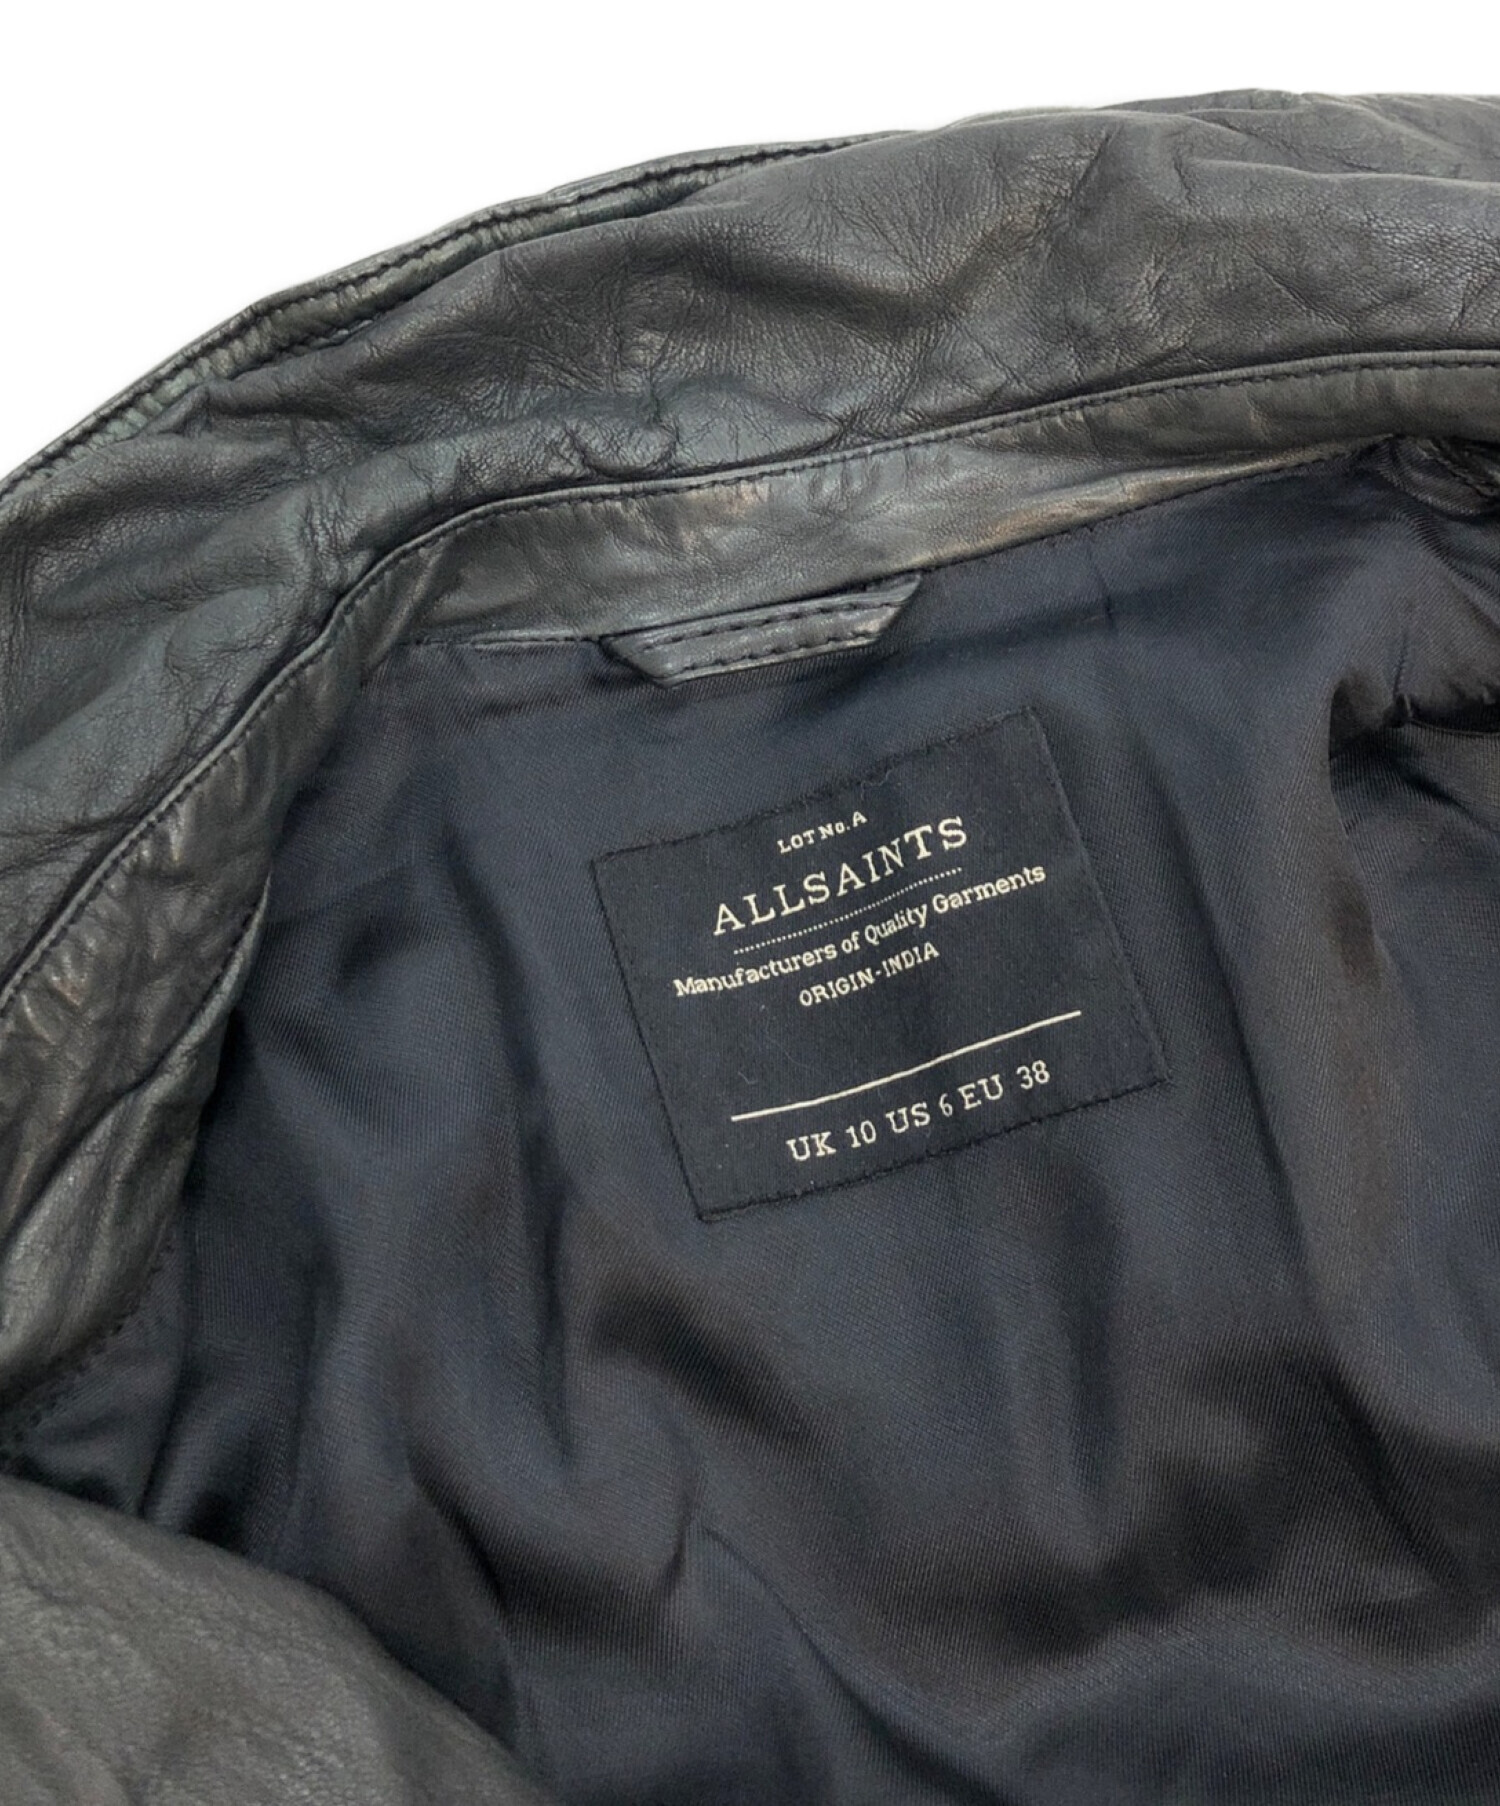 ALL SAINTS (オールセインツ) ダブルライダースジャケット ブラック サイズ:UK10/US6/EU38